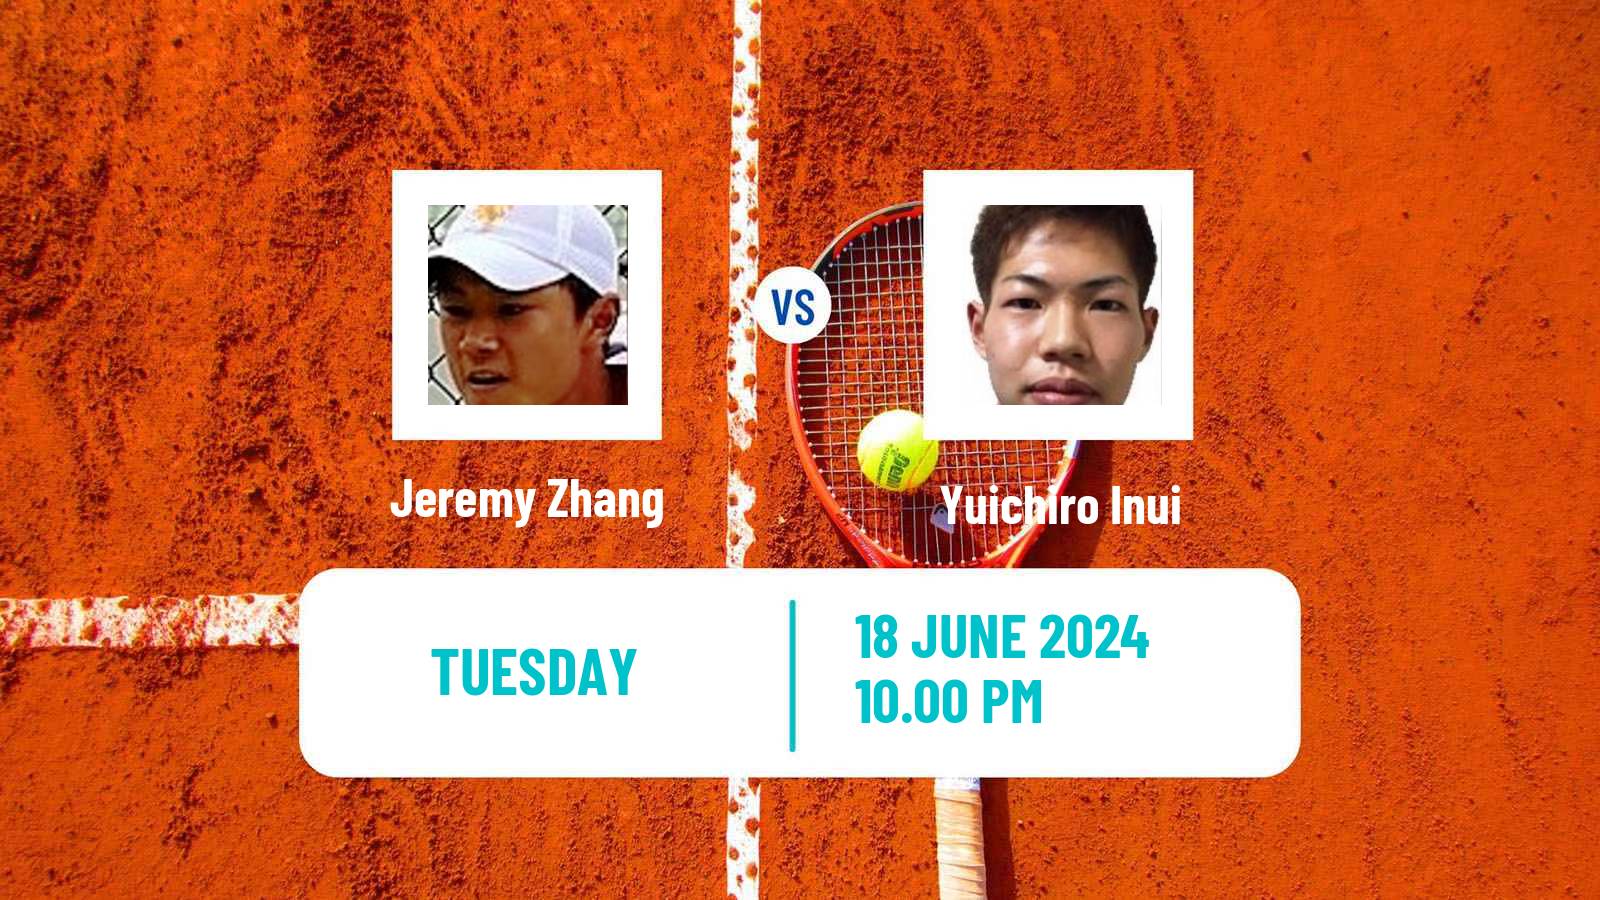 Tennis ITF M15 Hong Kong 2 Men Jeremy Zhang - Yuichiro Inui